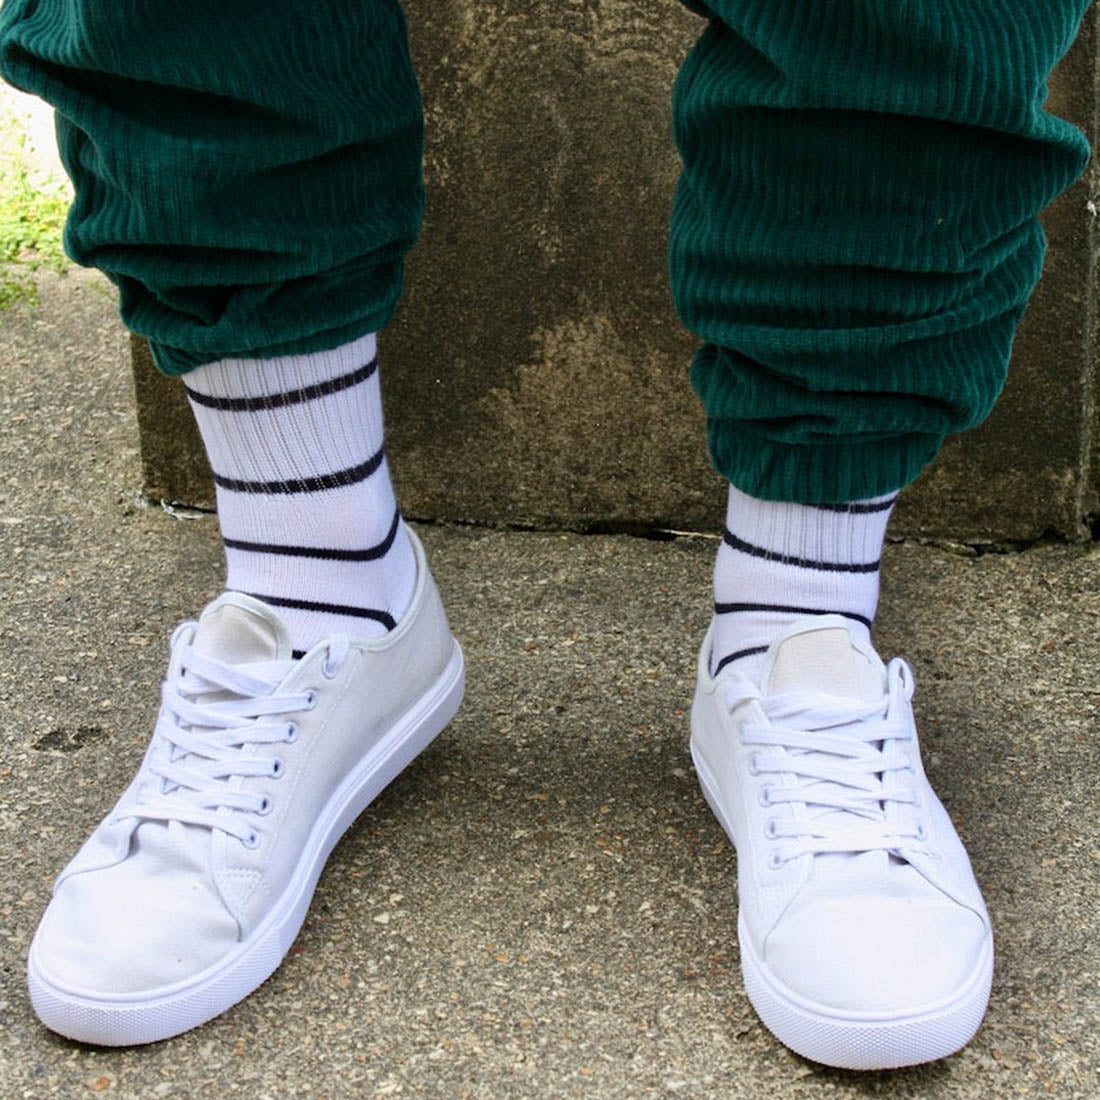 socks-white-navy-striped-bamboo-socks-2.jpg